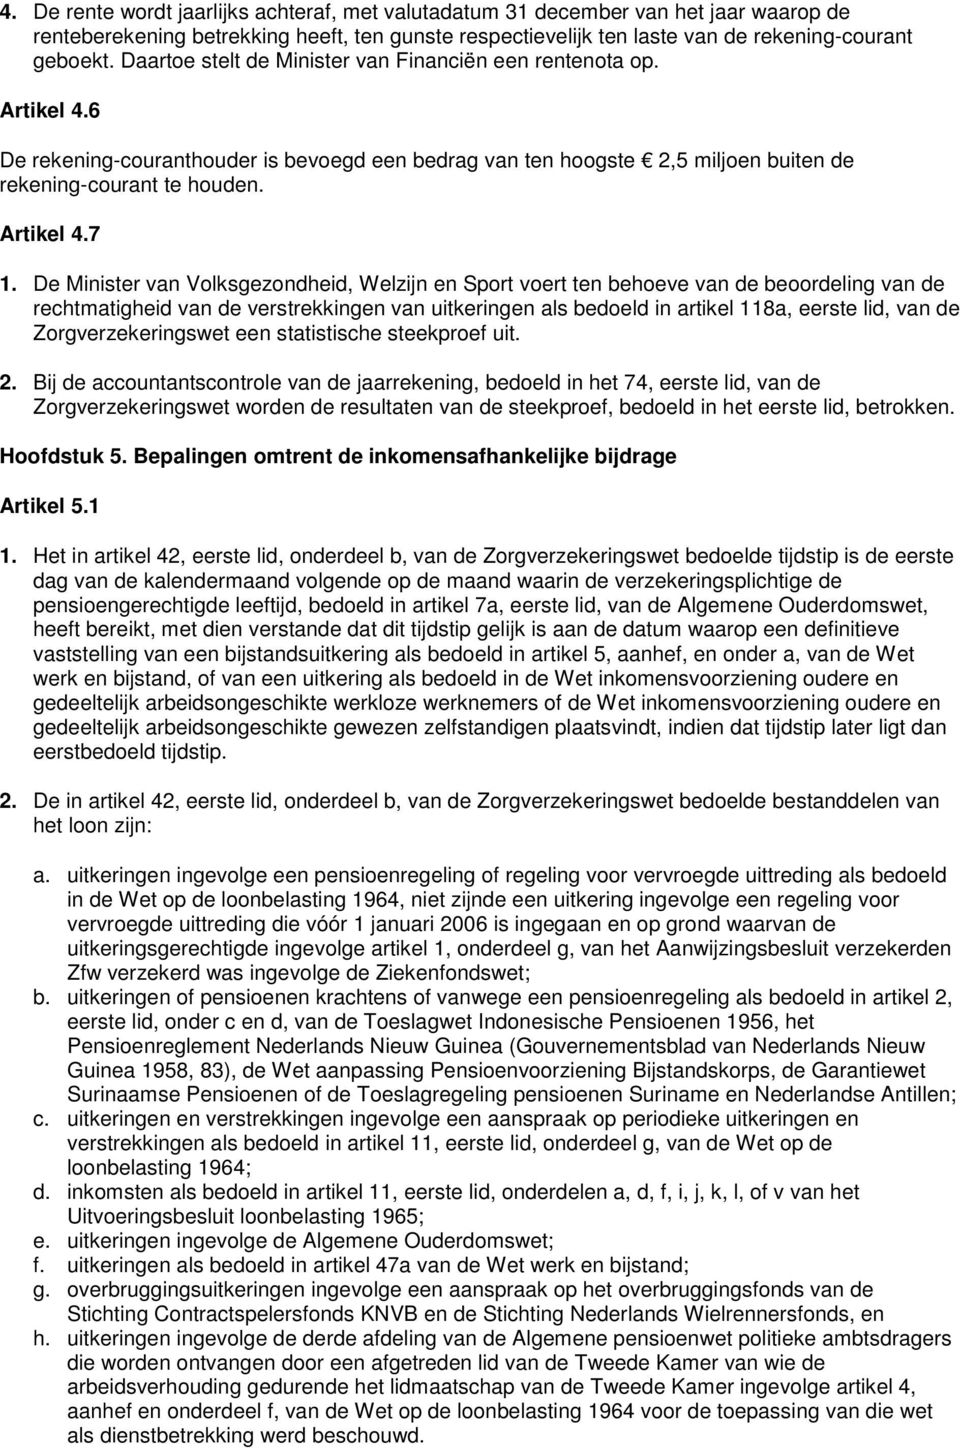 De Minister van Volksgezondheid, Welzijn en Sport voert ten behoeve van de beoordeling van de rechtmatigheid van de verstrekkingen van uitkeringen als bedoeld in artikel 118a, eerste lid, van de